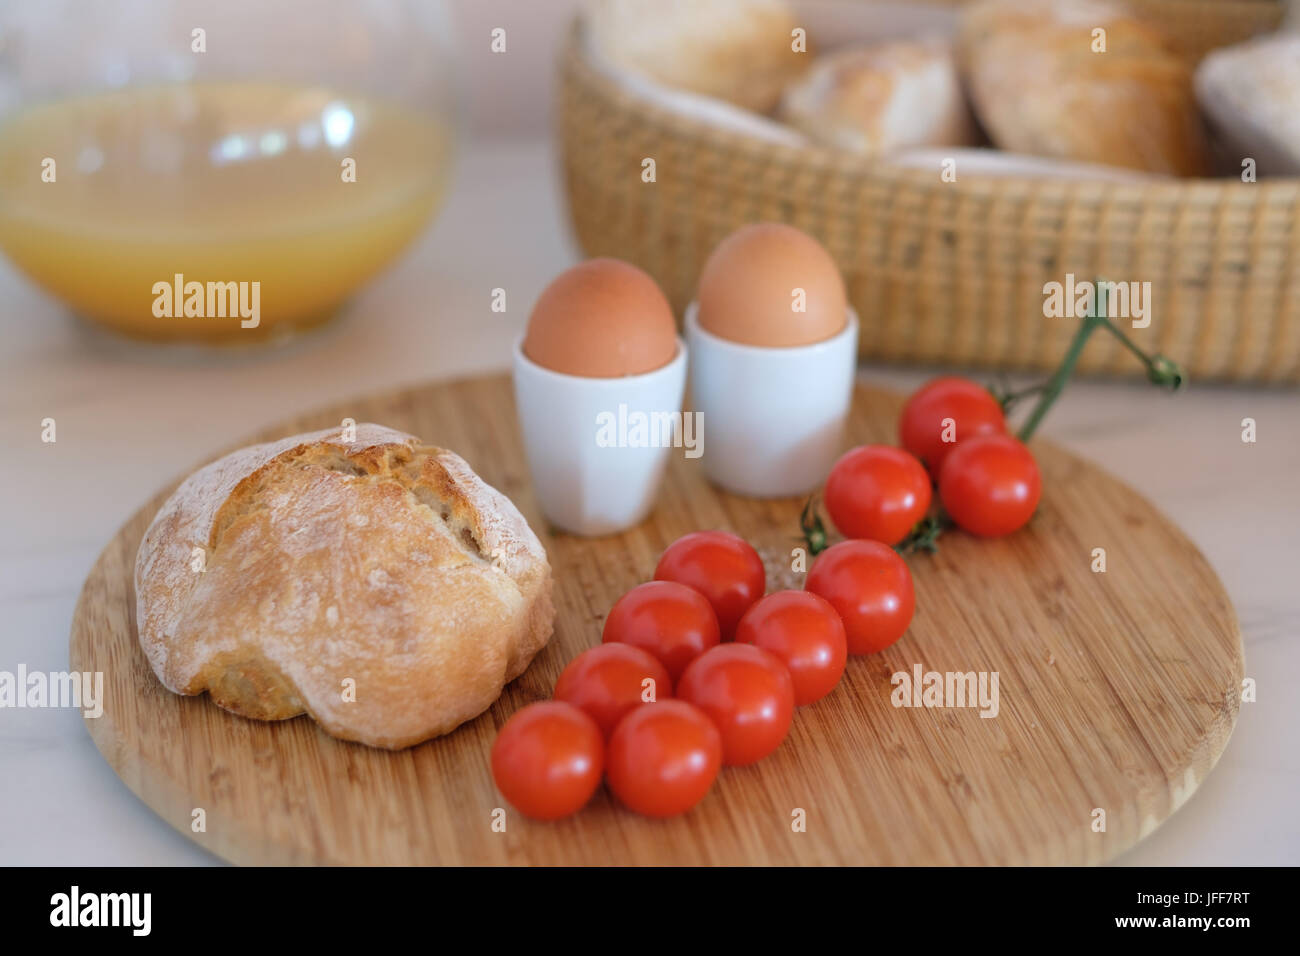 Gesundes Frühstück mit gekochten Eiern, Brot, Tomaten und Orangensaft Stockfoto